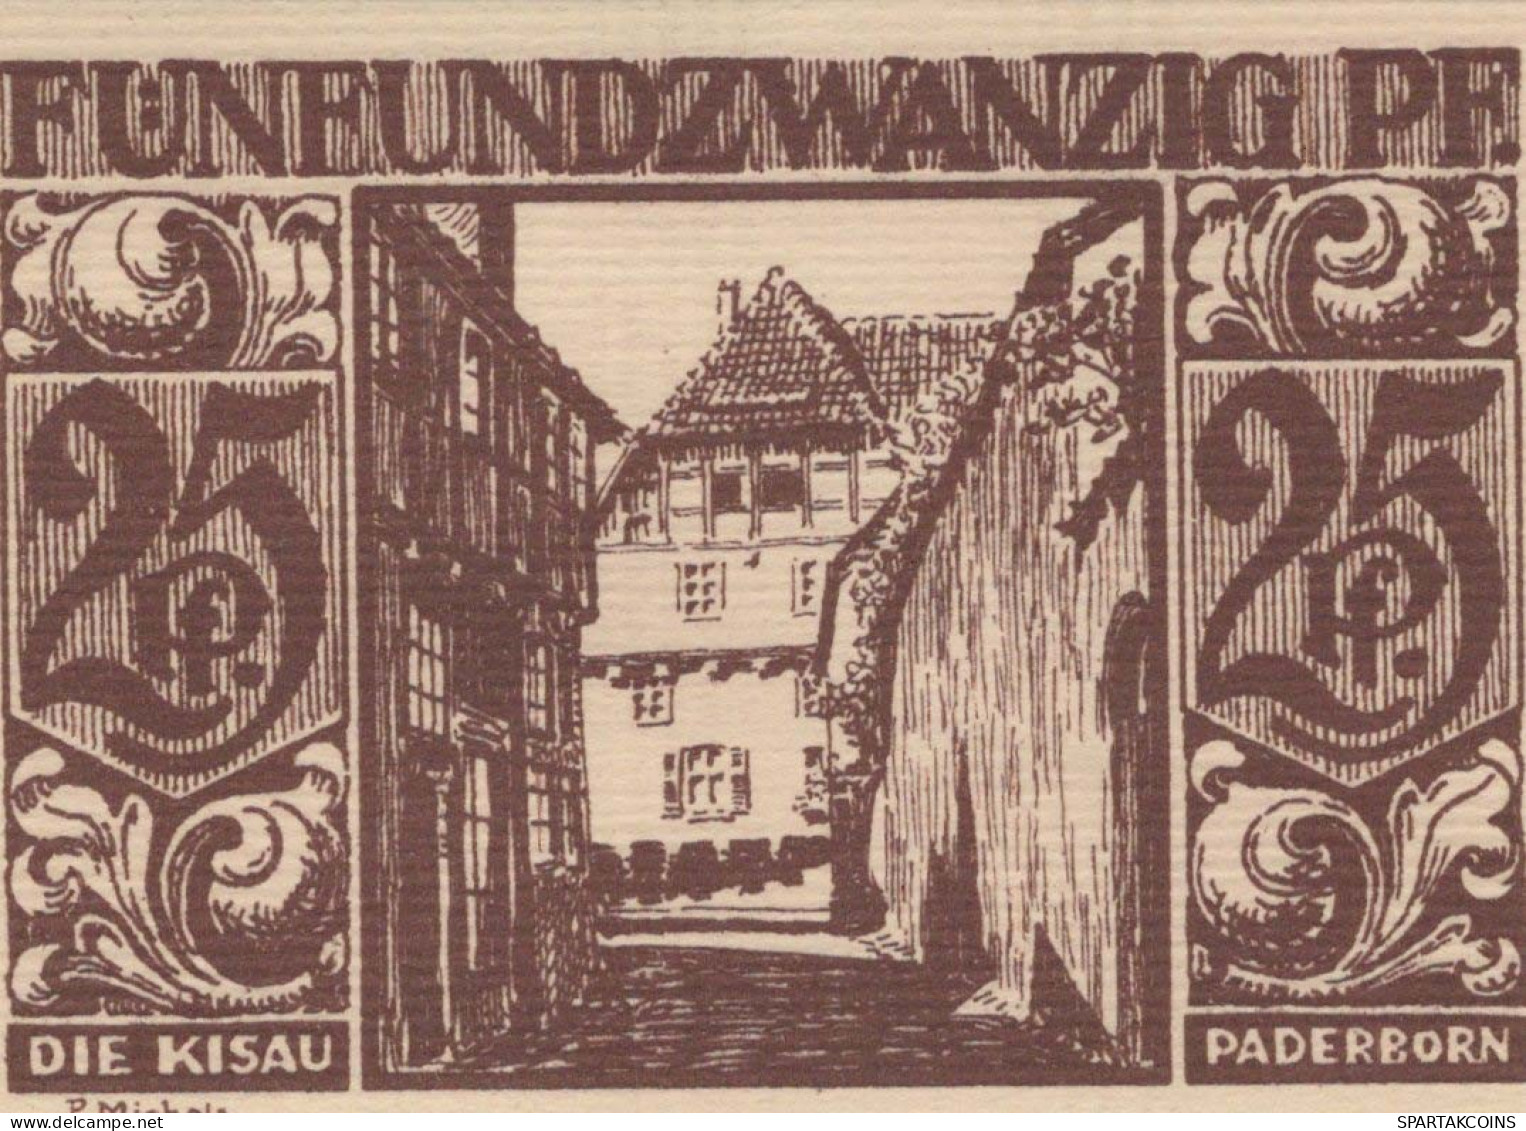 25 PFENNIG 1921 Stadt PADERBORN Westphalia DEUTSCHLAND Notgeld Banknote #PG193 - Lokale Ausgaben